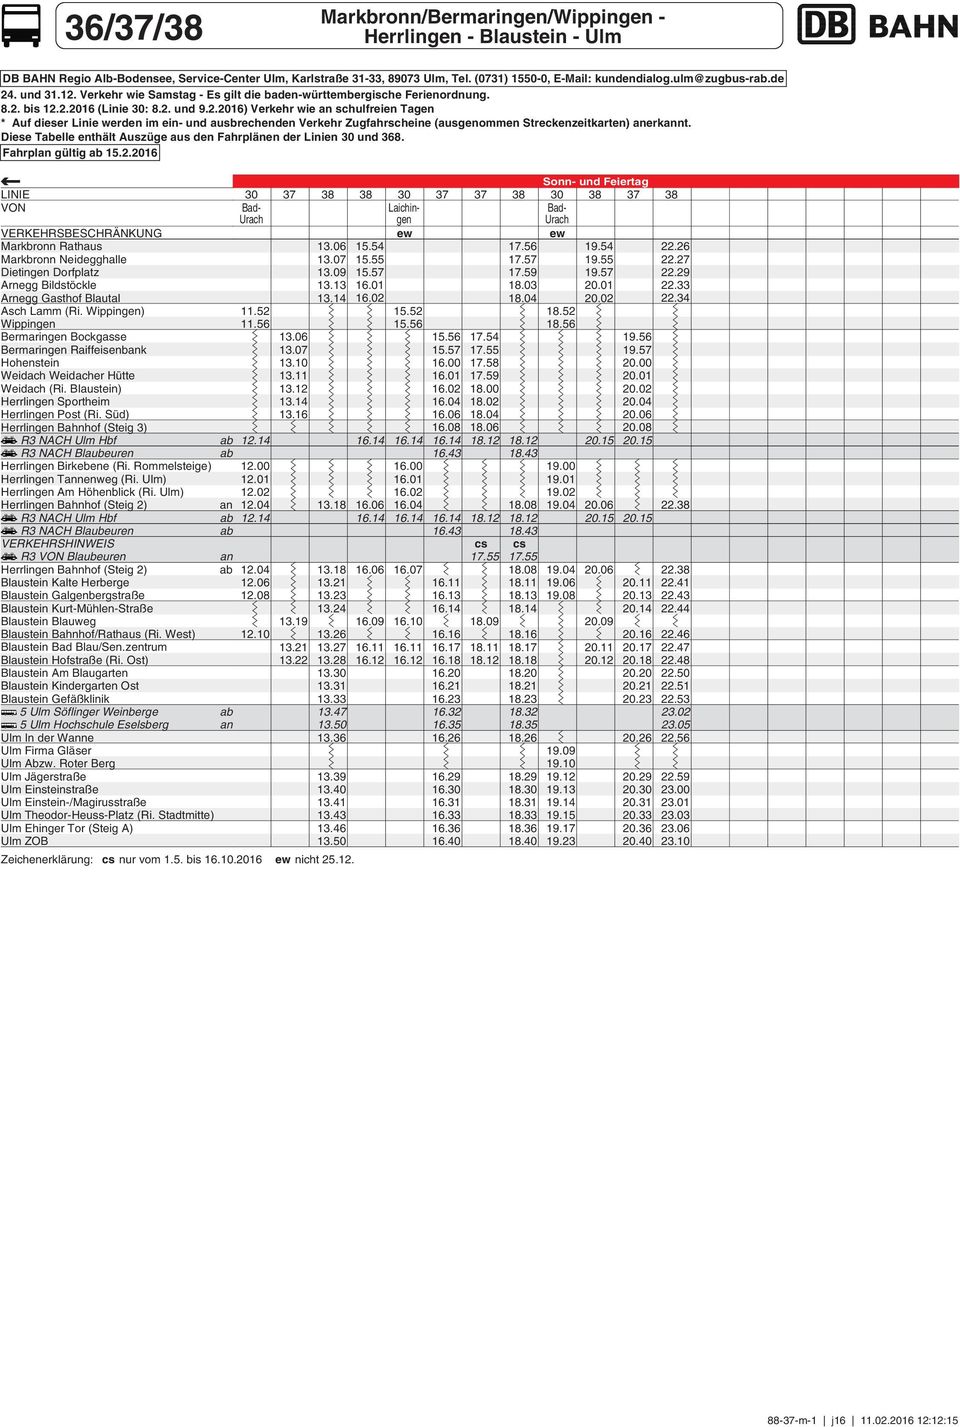 Diese Tabelle enthält Auszüge aus den ahrplänen der Linien und 8. ahrplan gültig ab 15.2.2016 VON VERKEHRBECHRÄNKUNG Asch Lamm (Ri. ) Weidach (Ri. Blaustein) Herrlingen portheim Herrlingen Post (Ri.